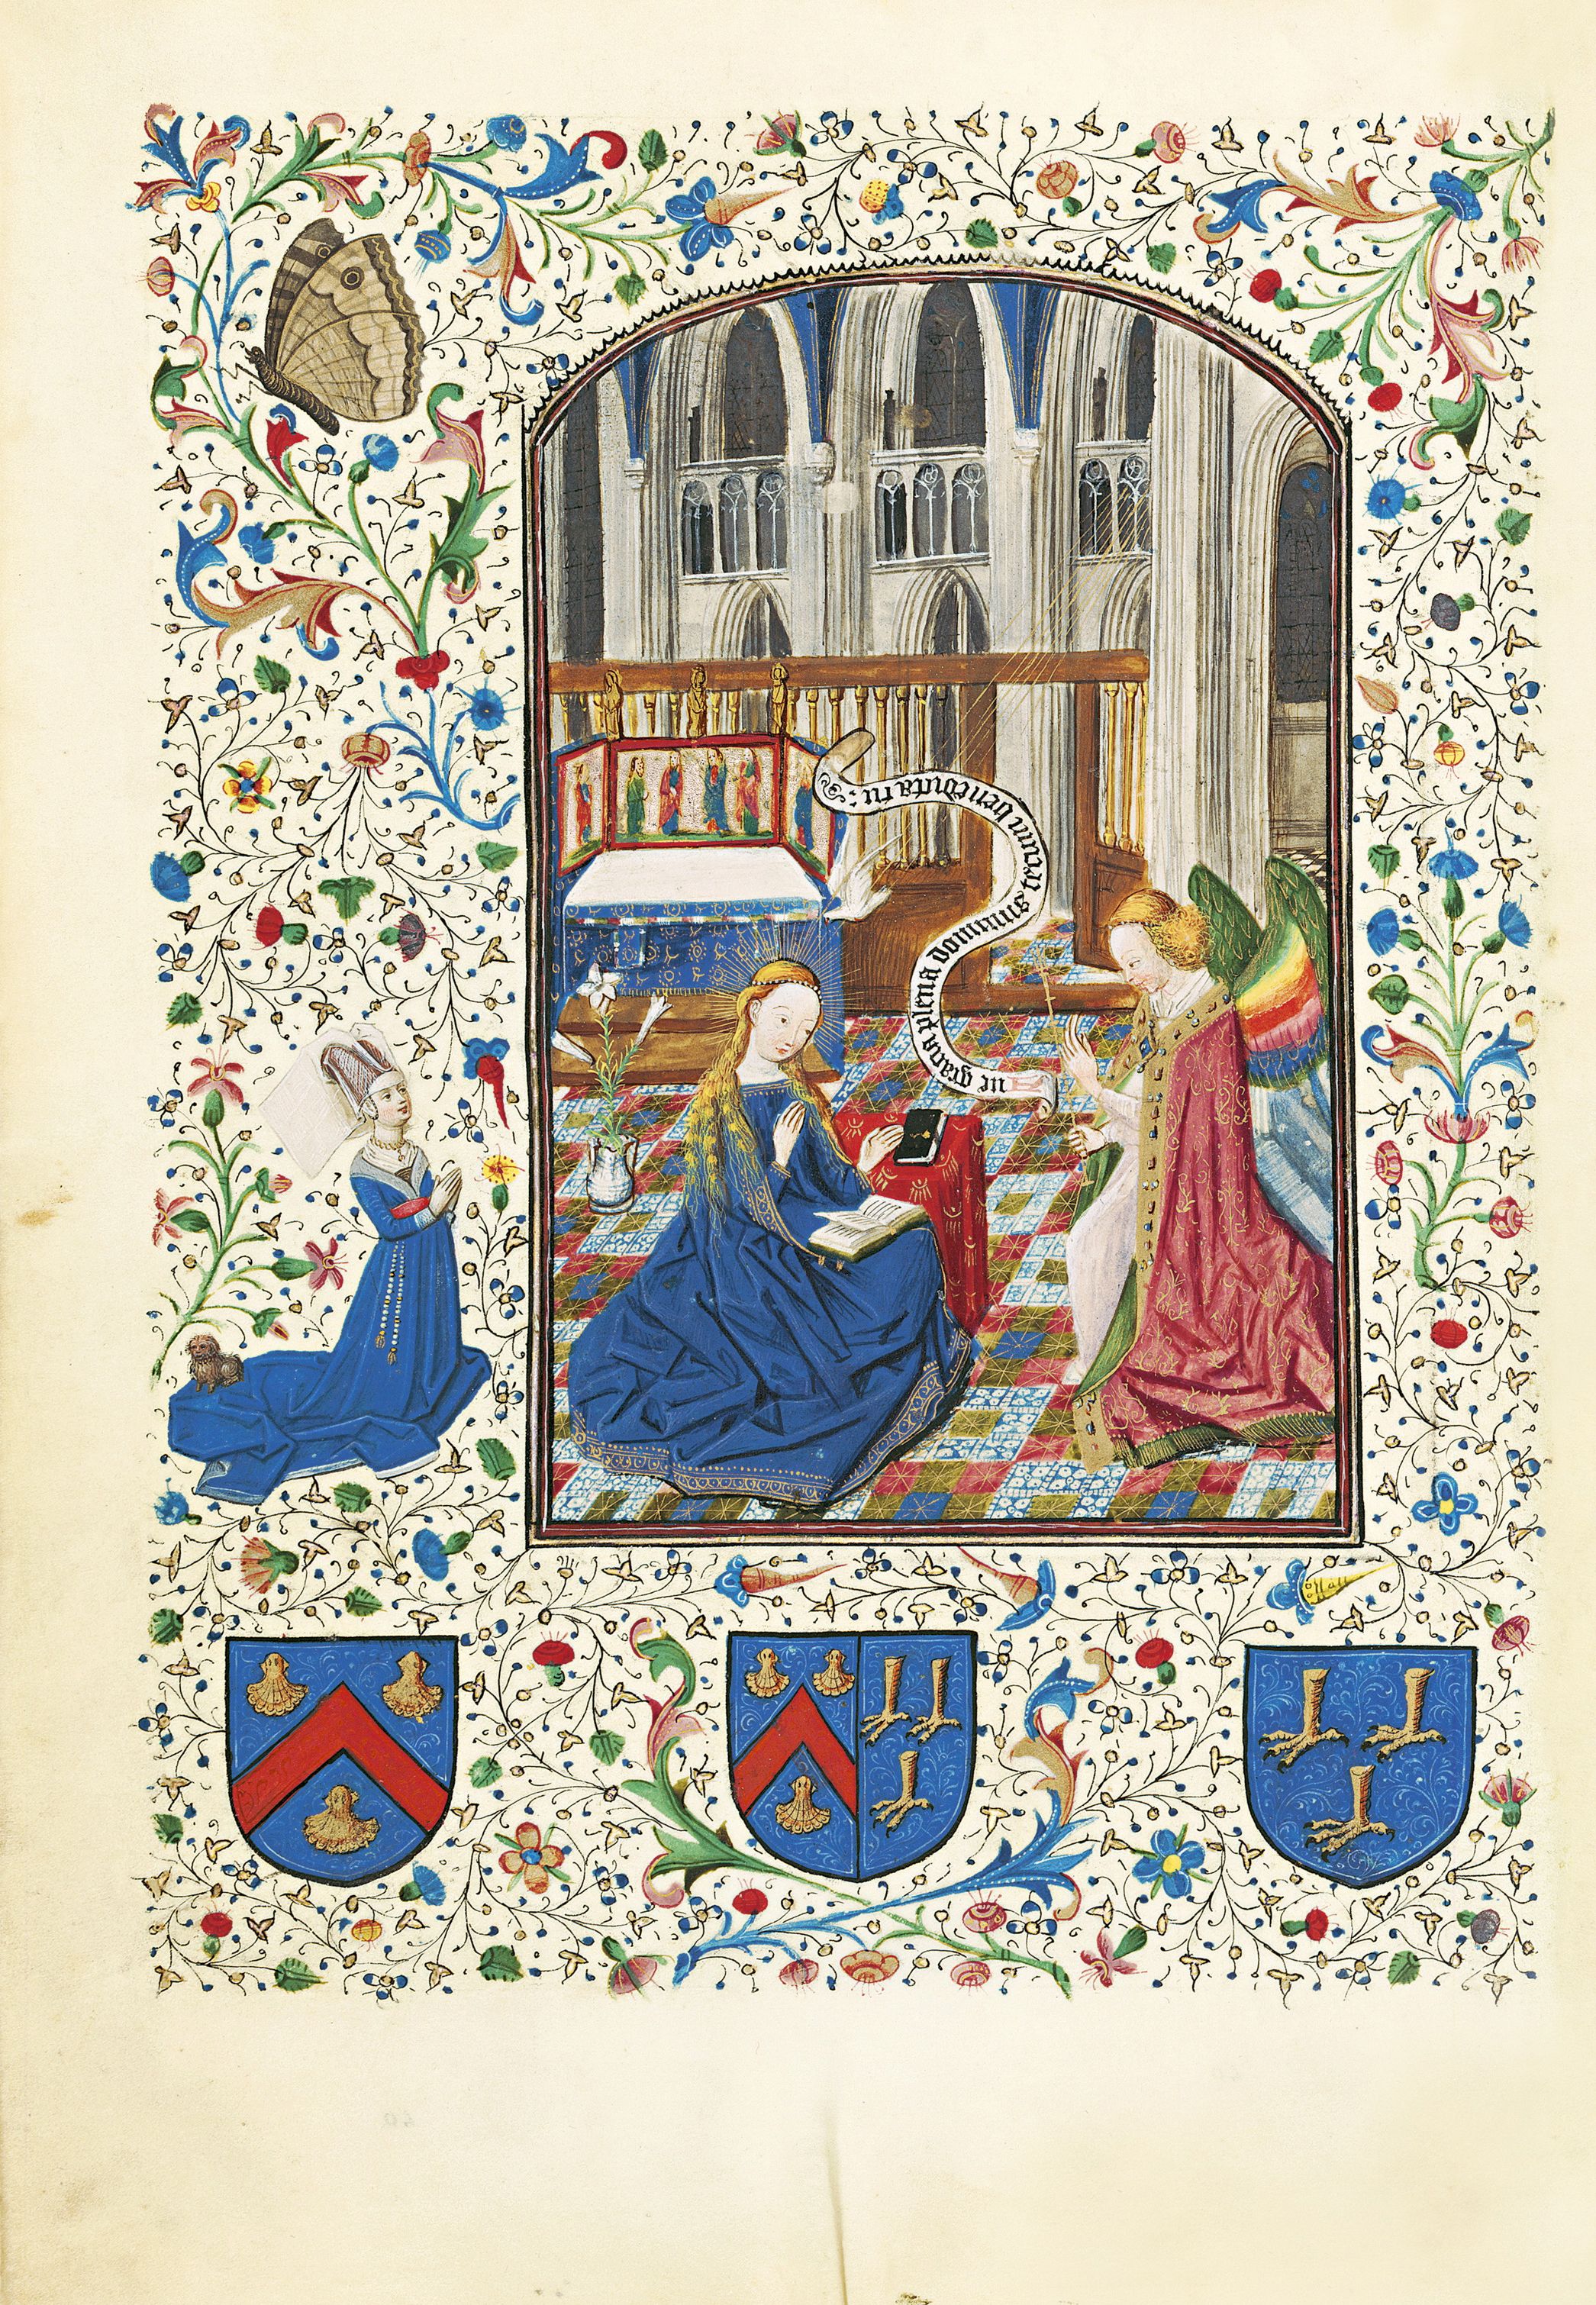 Annunciazione Officium beatae Mariae Virginis secundum usum Romanum Bruges, sec. xv (1455-1460)